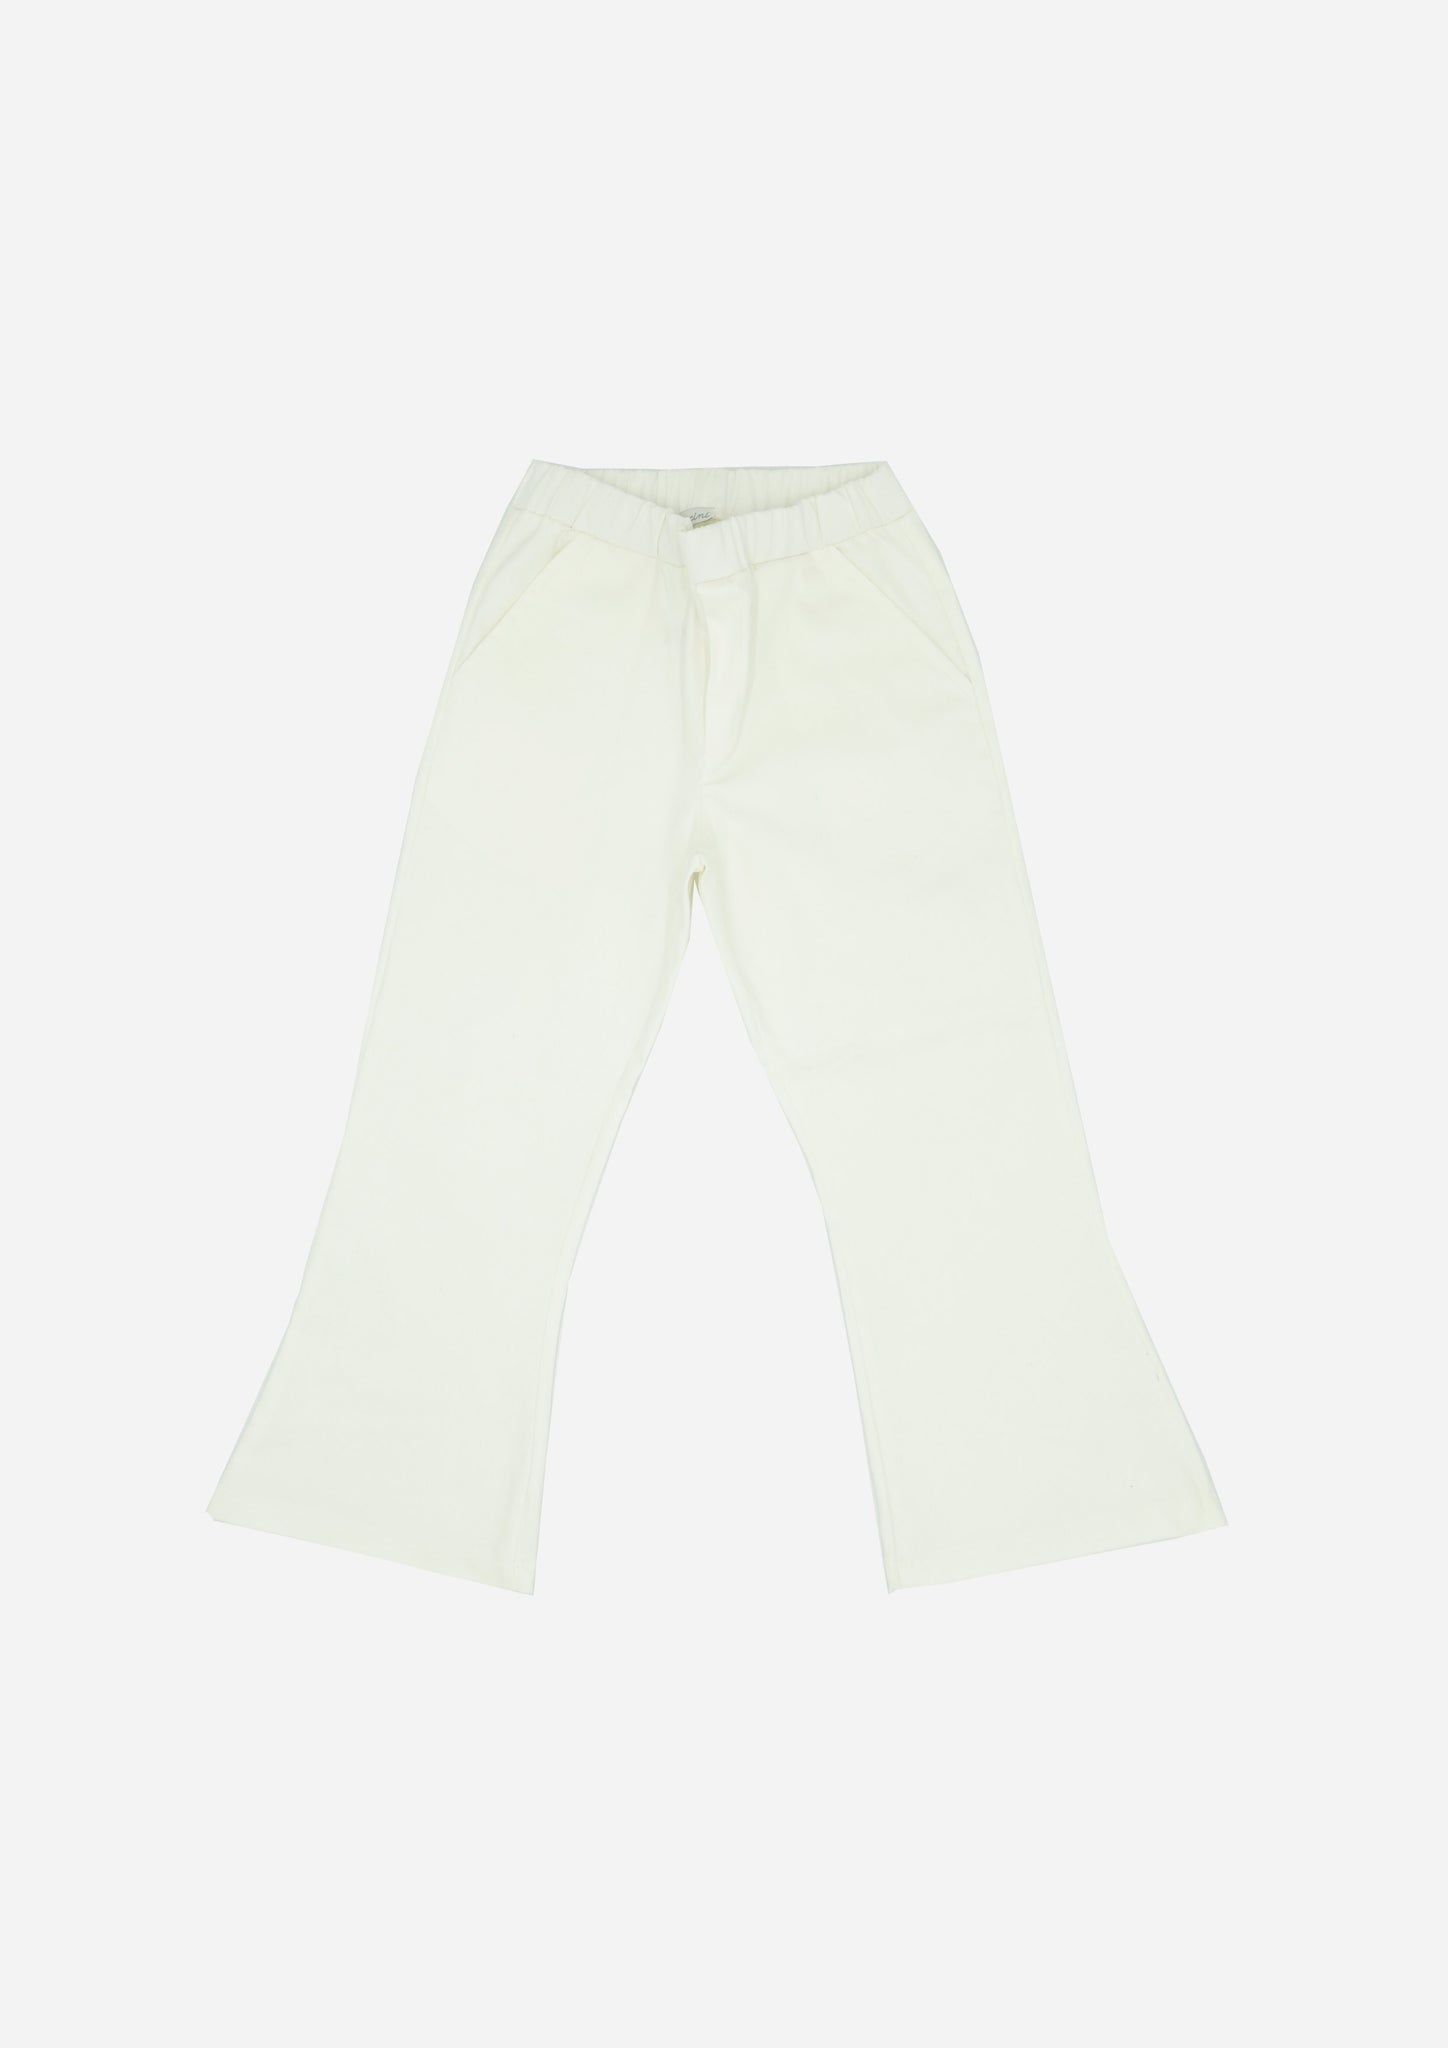 Jeans NATALIA-Pantaloni e Shorts-I Leoncini Shop